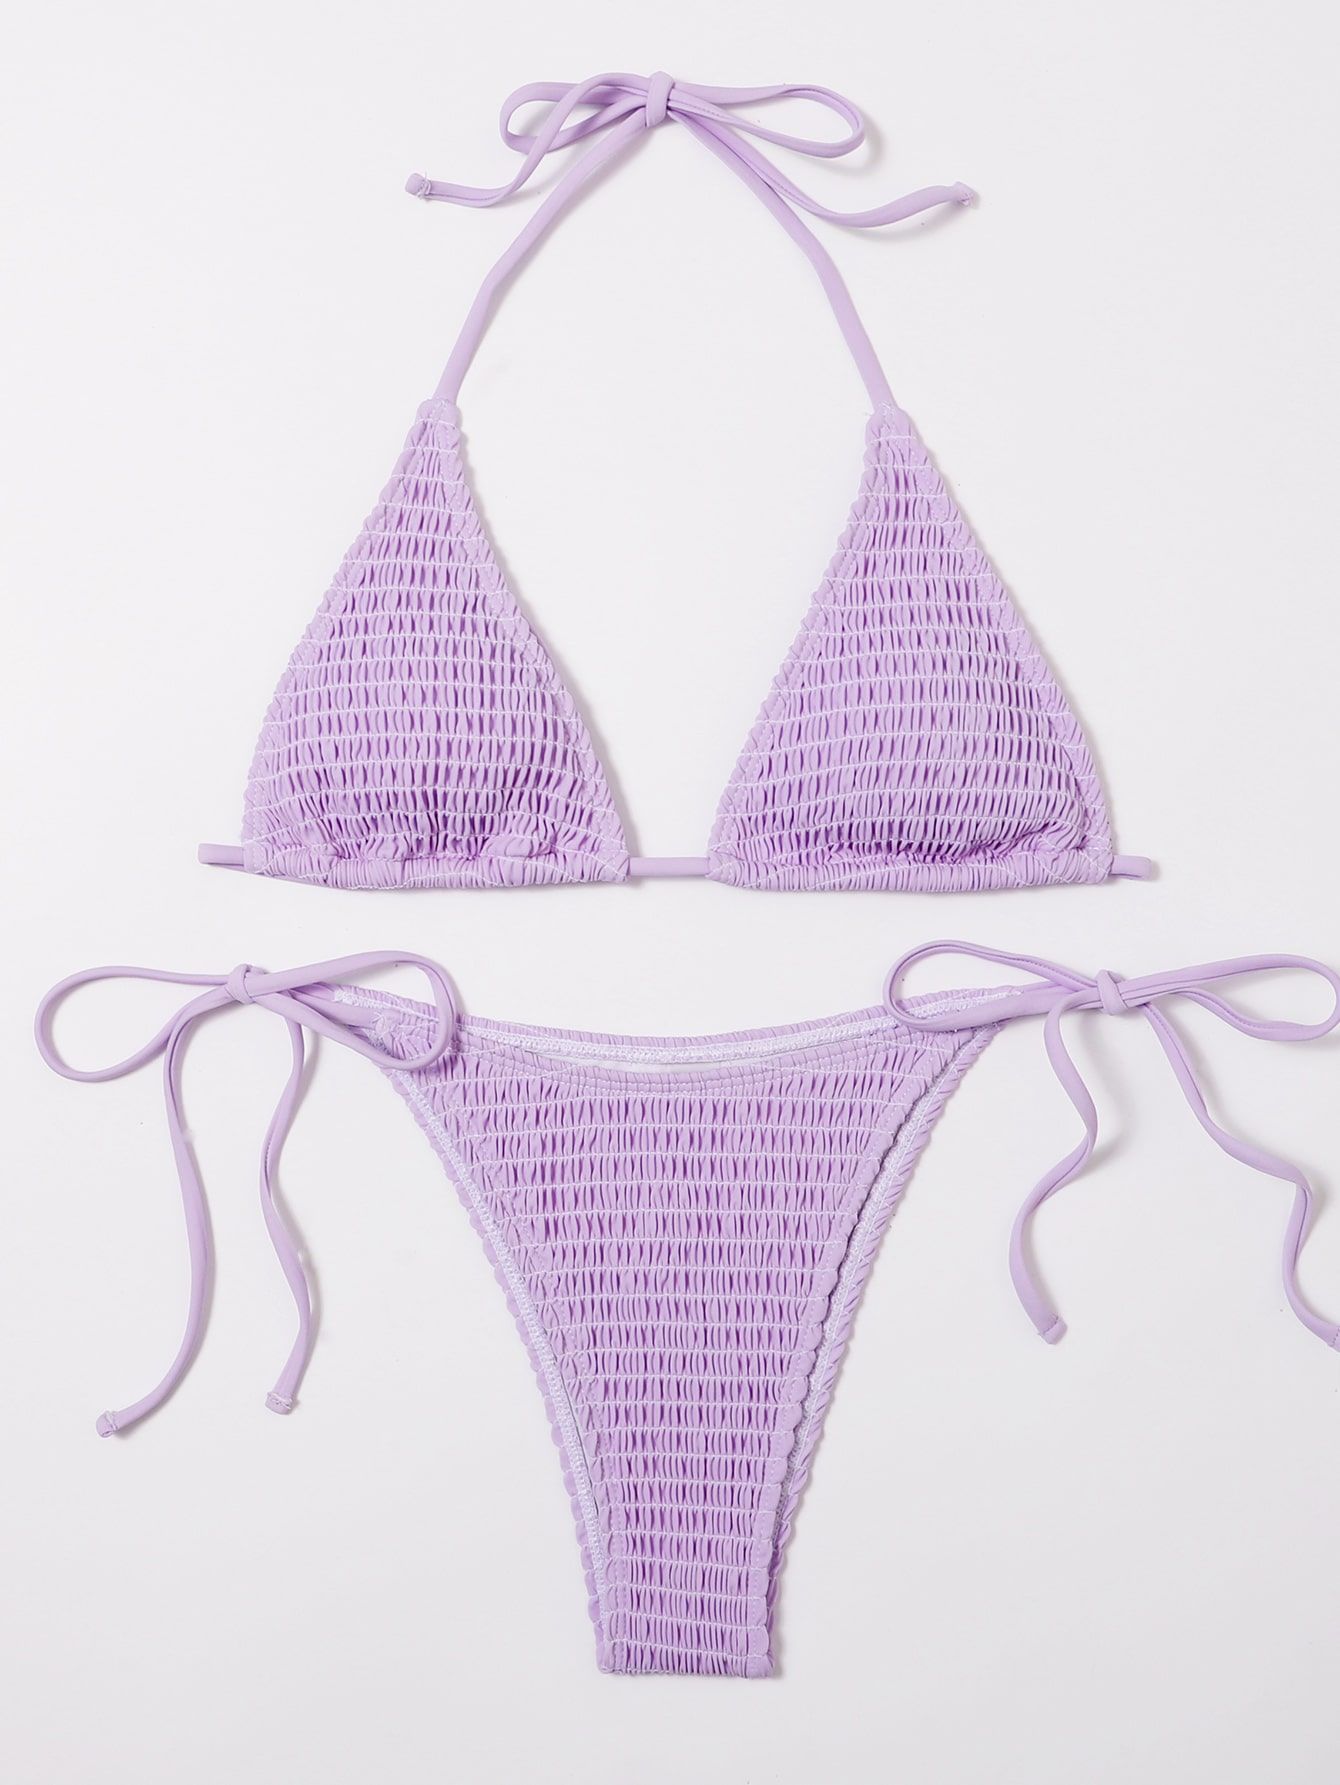 Smocked Micro Triangle Tie Side Bikini Swimsuit SKU: swswim23210205319(1000+ Reviews)$9.50$9.03Jo... | SHEIN